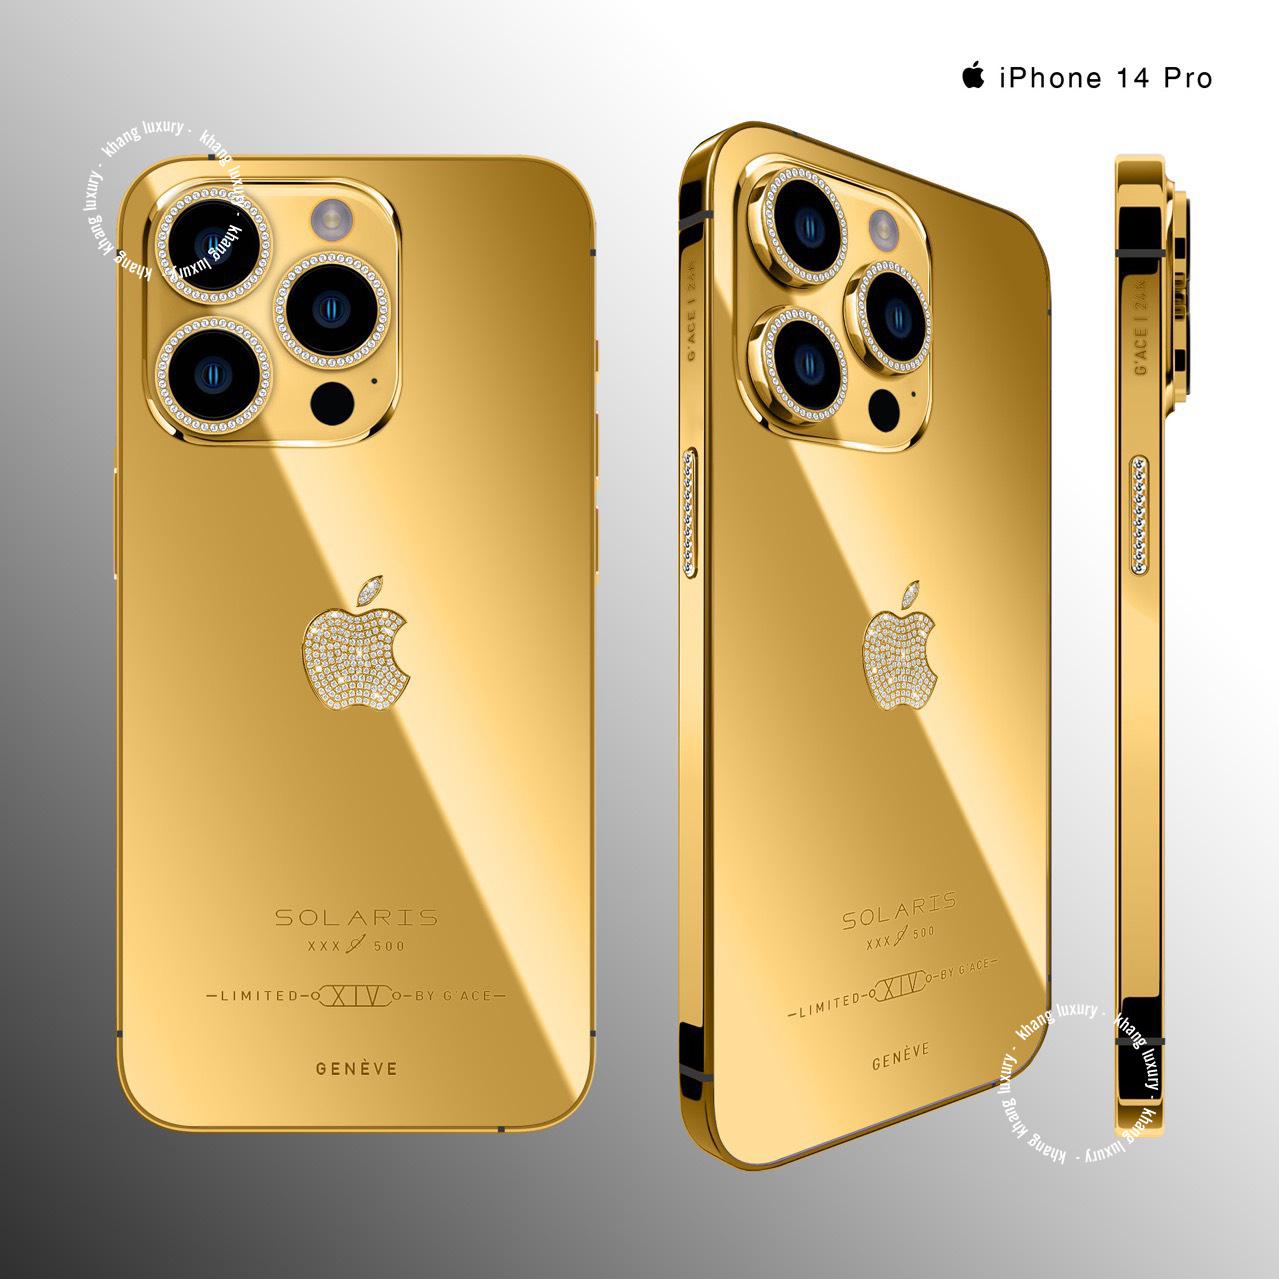 iPhone 14 mạ vàng: Hãy khám phá vẻ đẹp mê hồn của chiếc iPhone 14 mạ vàng. Được thiết kế để trở thành chiếc điện thoại đẳng cấp nhất, sản phẩm này sẽ khiến bạn trầm trồ với sự hoàn hảo từng chi tiết. Hãy cùng xem hình ảnh để hiểu rõ hơn về chiếc điện thoại này nhé.